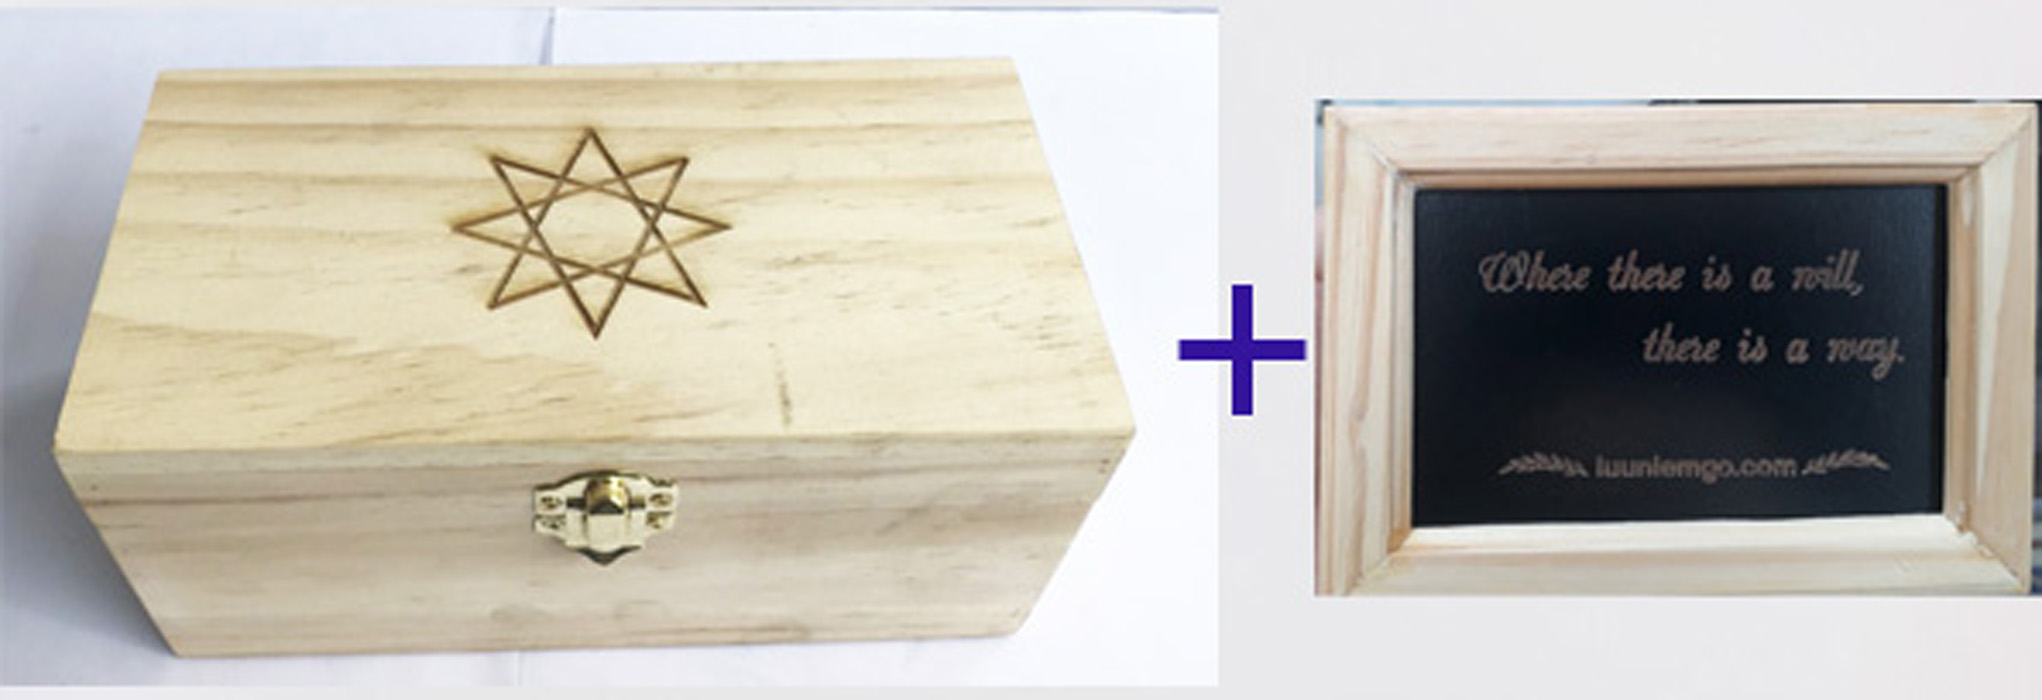 Hộp gỗ đựng quà , làm bằng 100% bằng gỗ thông mặt trên có khắc hình độc đáo thích hợp để vật dụng hoặc dùng làm quà tặng độc lạ.